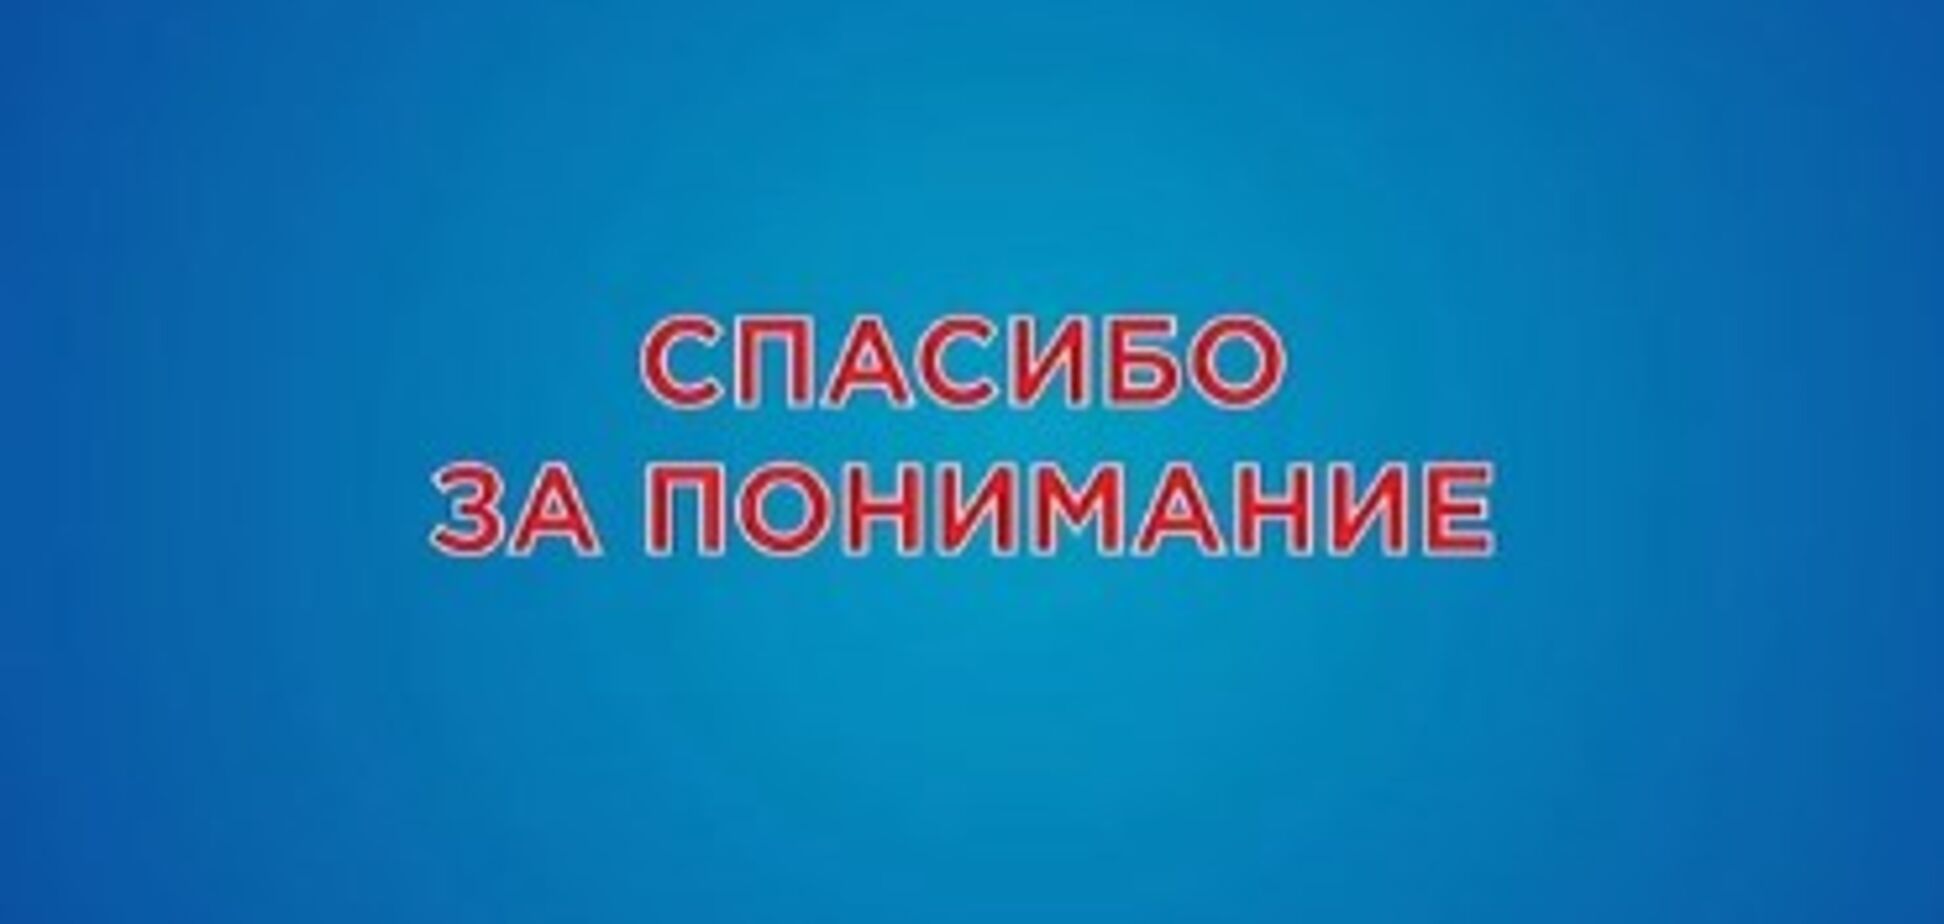 ''Ми повинні'': ''Інтер'' вибачився за українську мову в ефірі